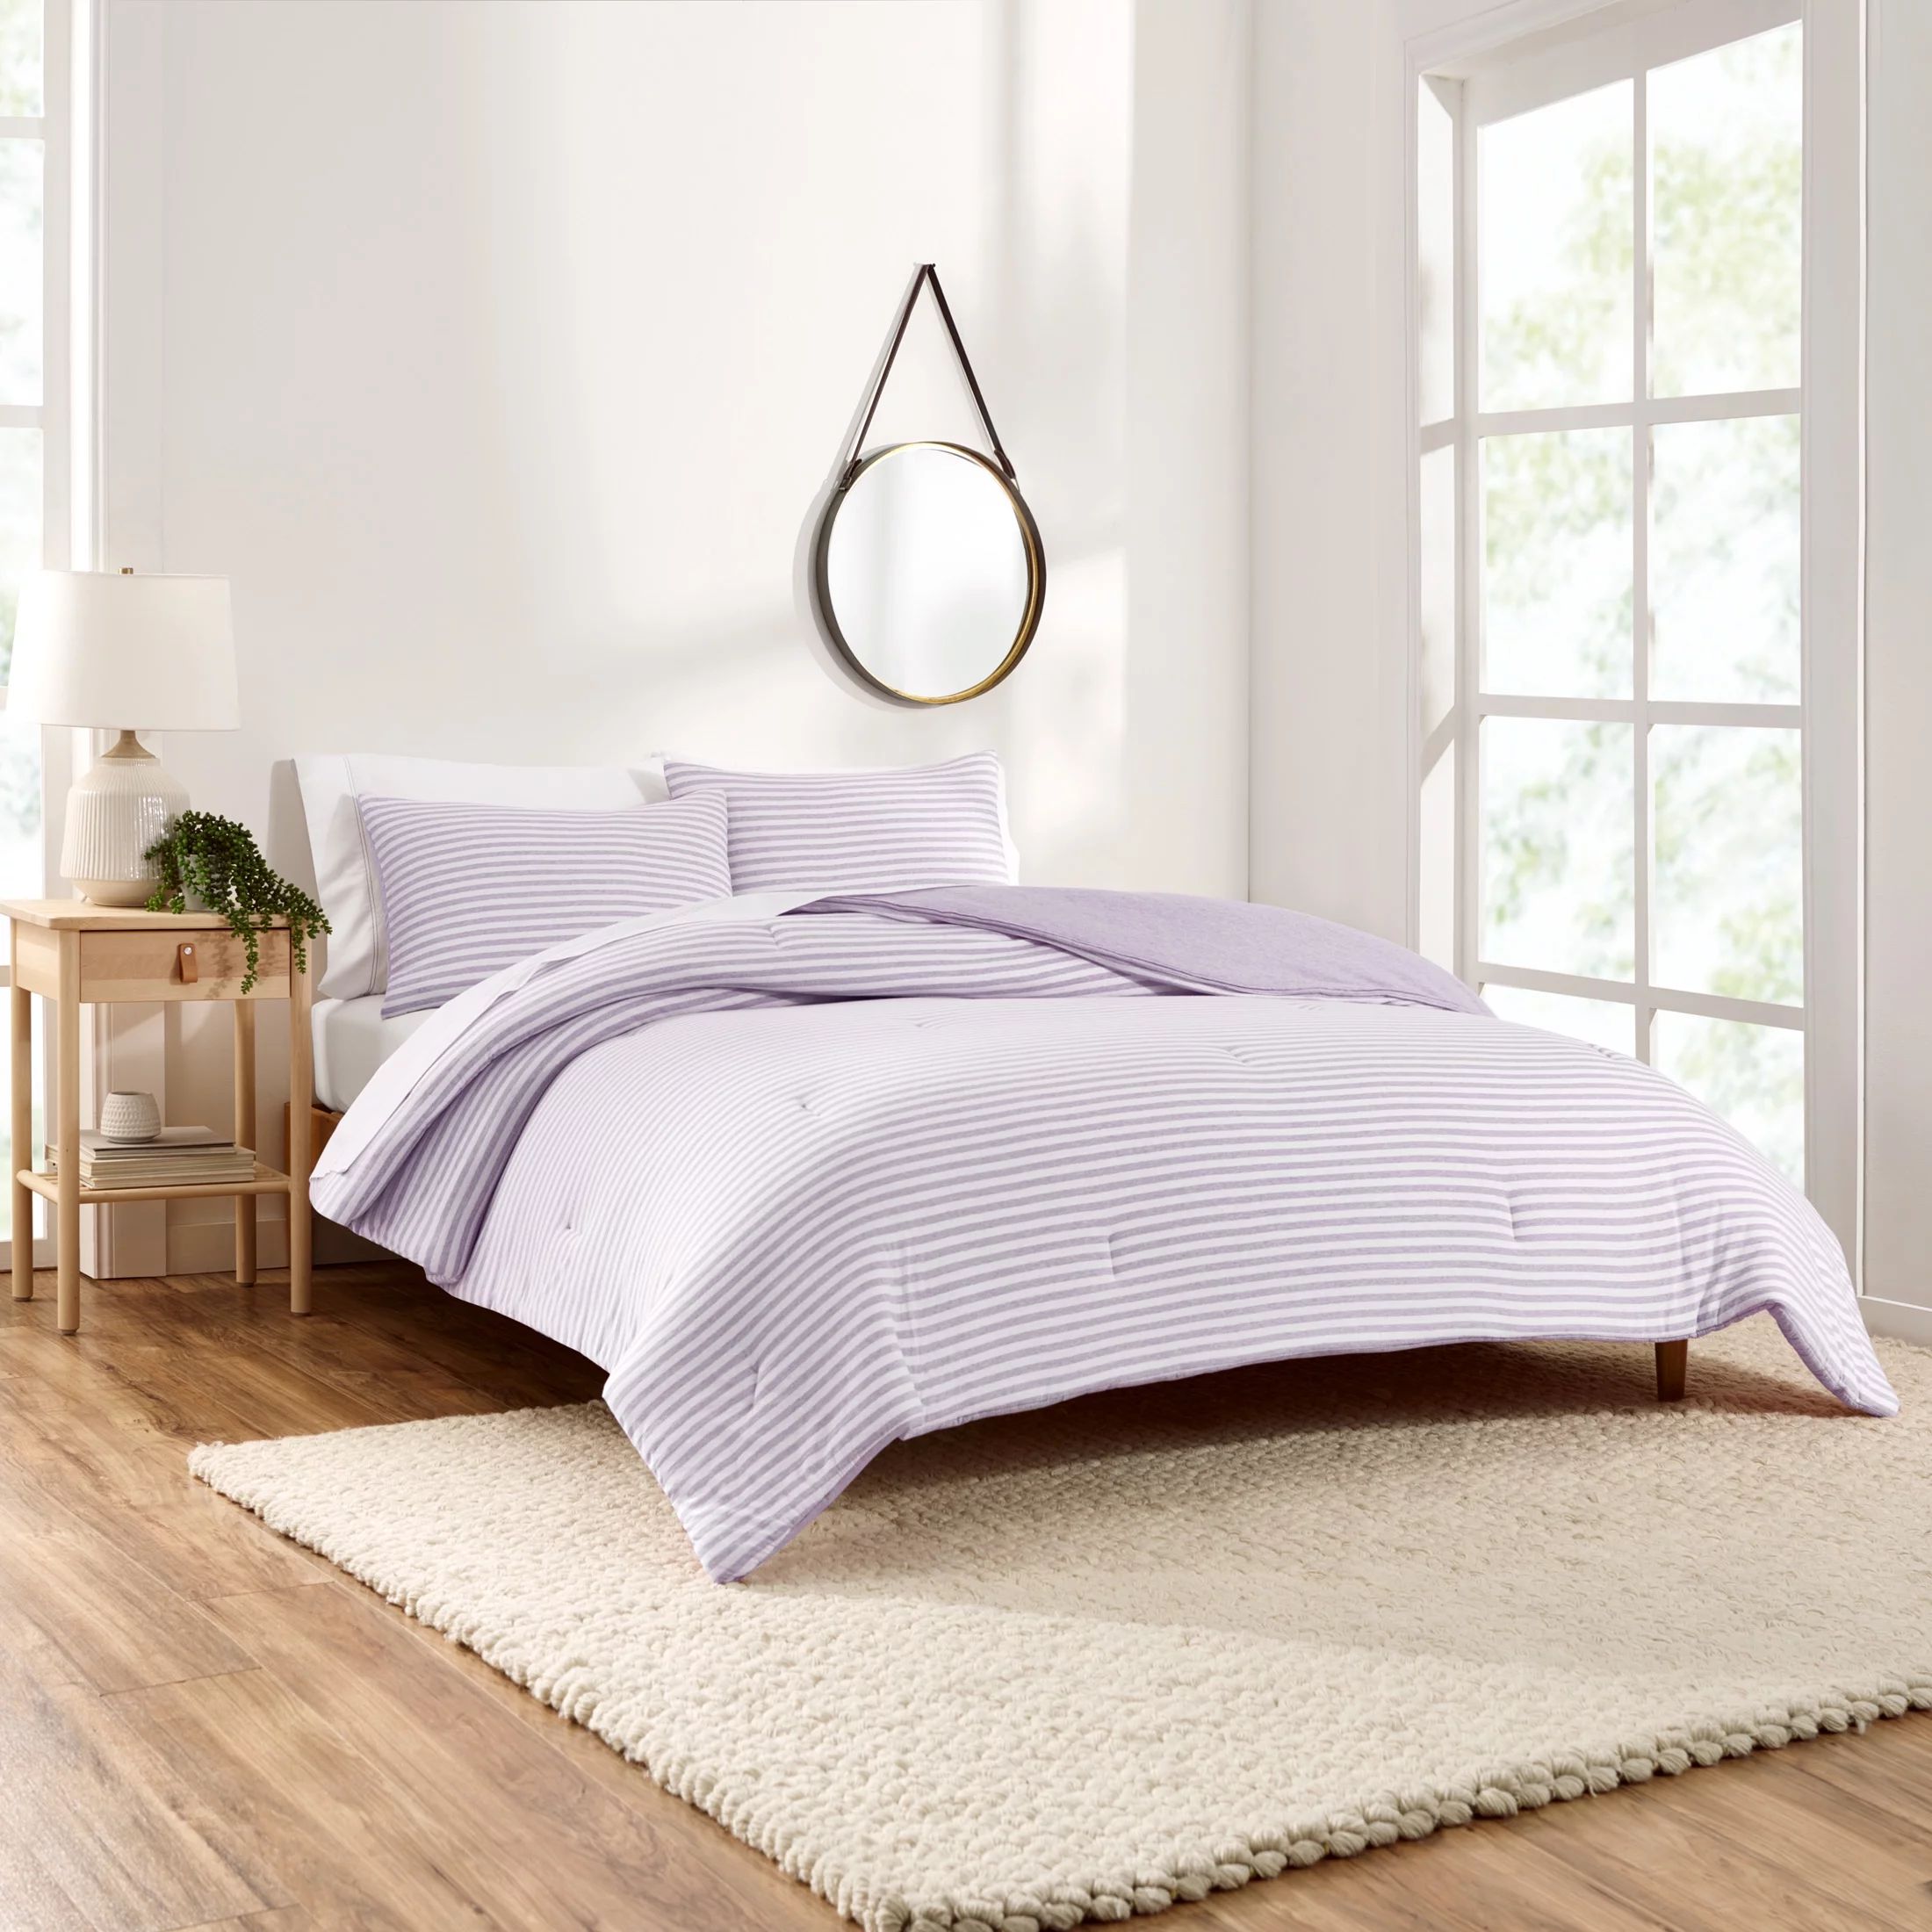 Gap Home T-Shirt Soft Jersey Reversible Organic Cotton Blend Comforter Set, Full/Queen, Lavender,... | Walmart (US)